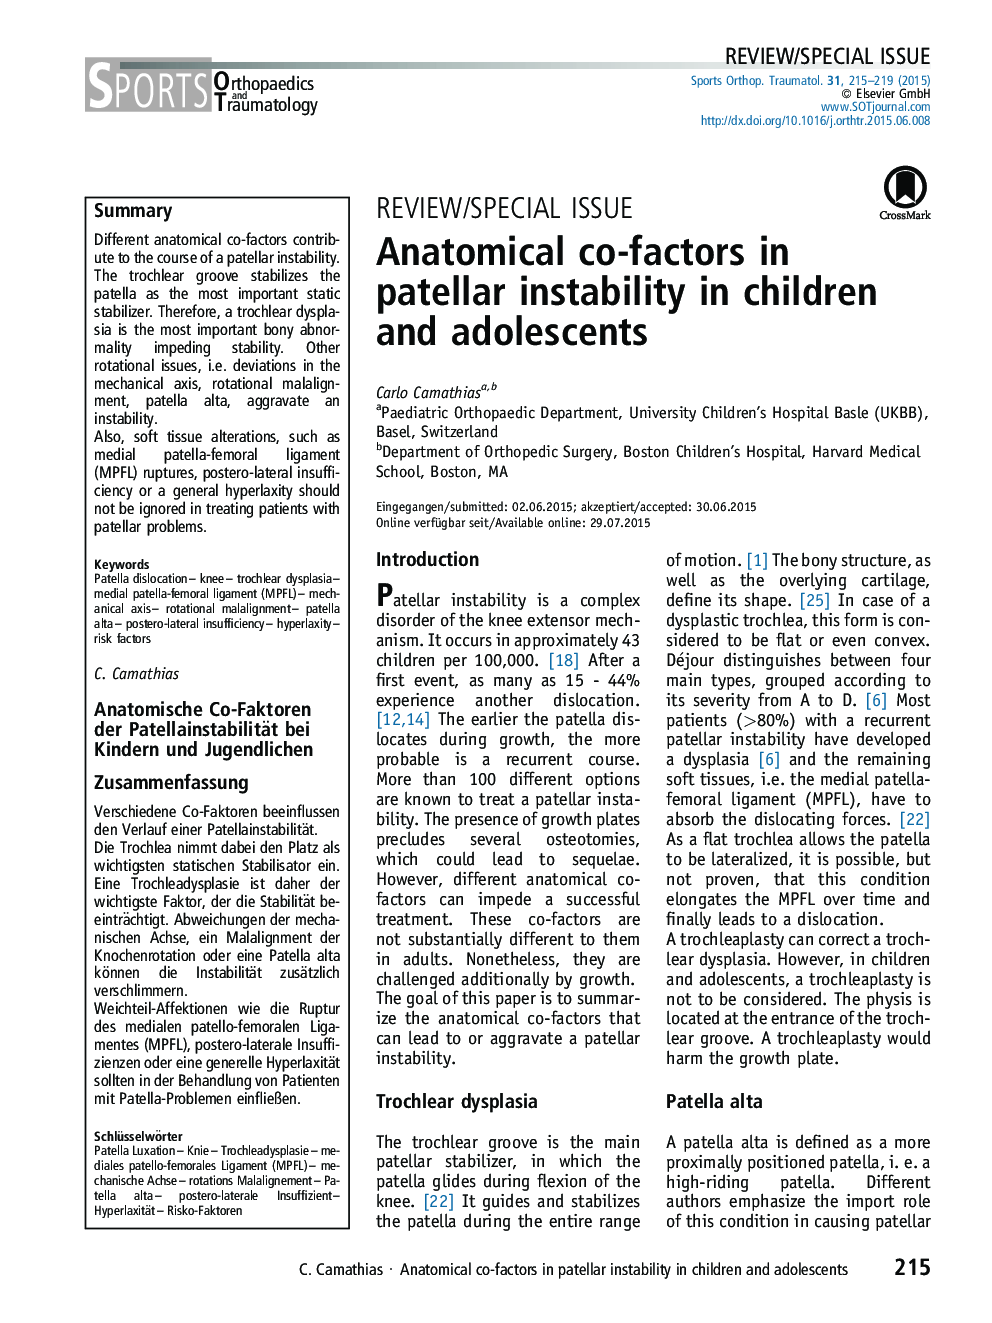 عوامل مشترک آناتومیکی در بی ثباتی پاتلا در کودکان و نوجوانان